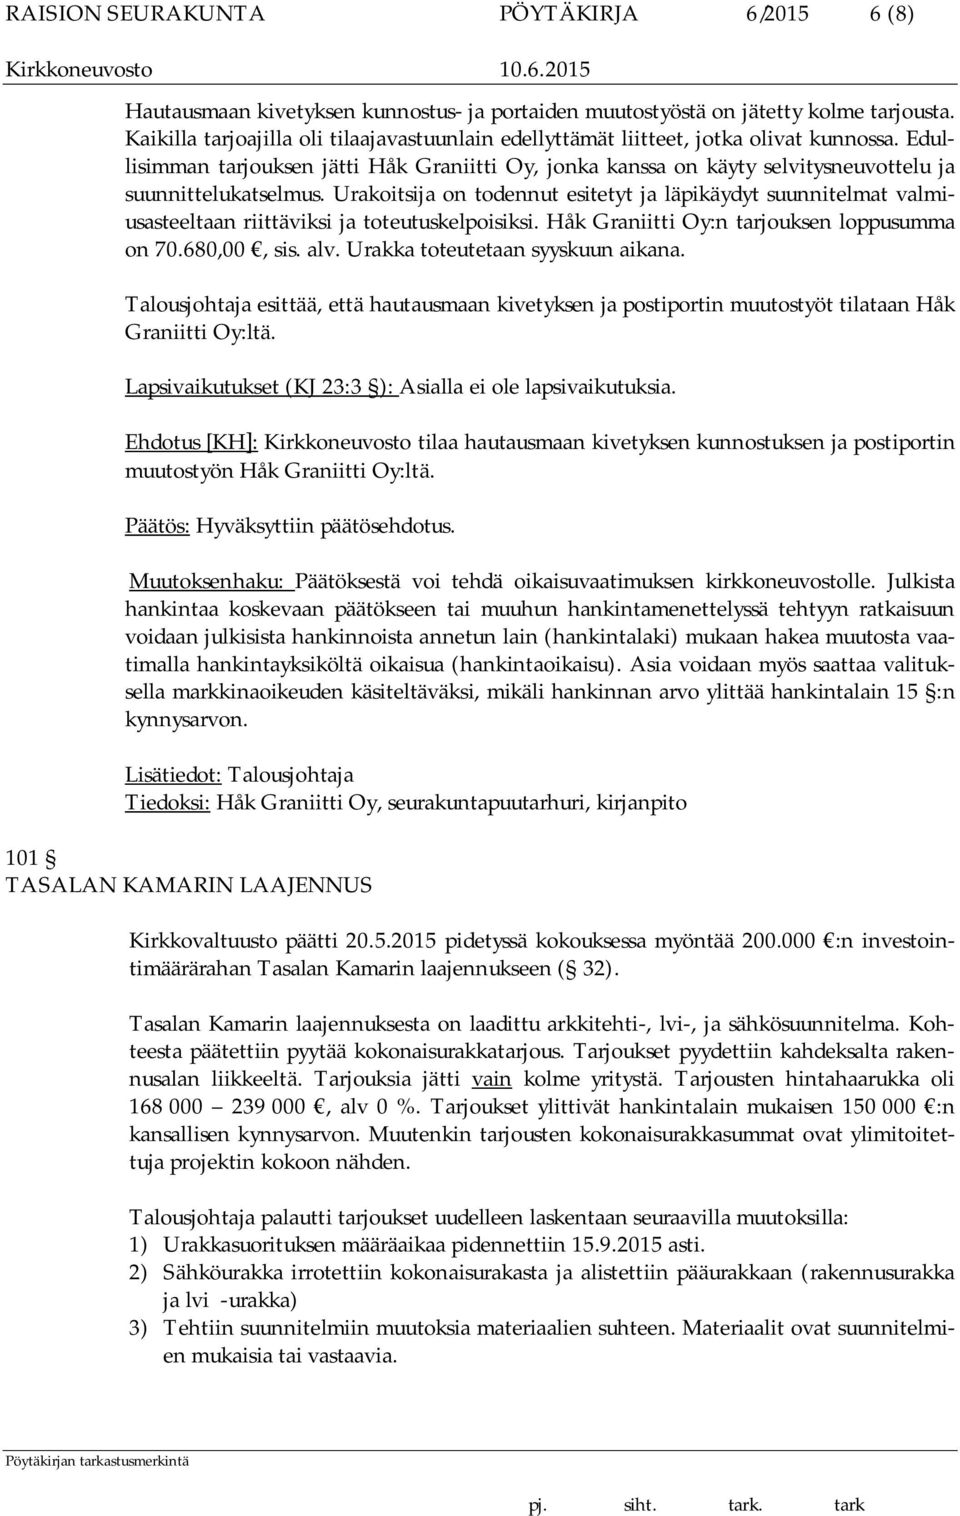 Edullisimman tarjouksen jätti Håk Graniitti Oy, jonka kanssa on käyty selvitysneuvottelu ja suunnittelukatselmus.